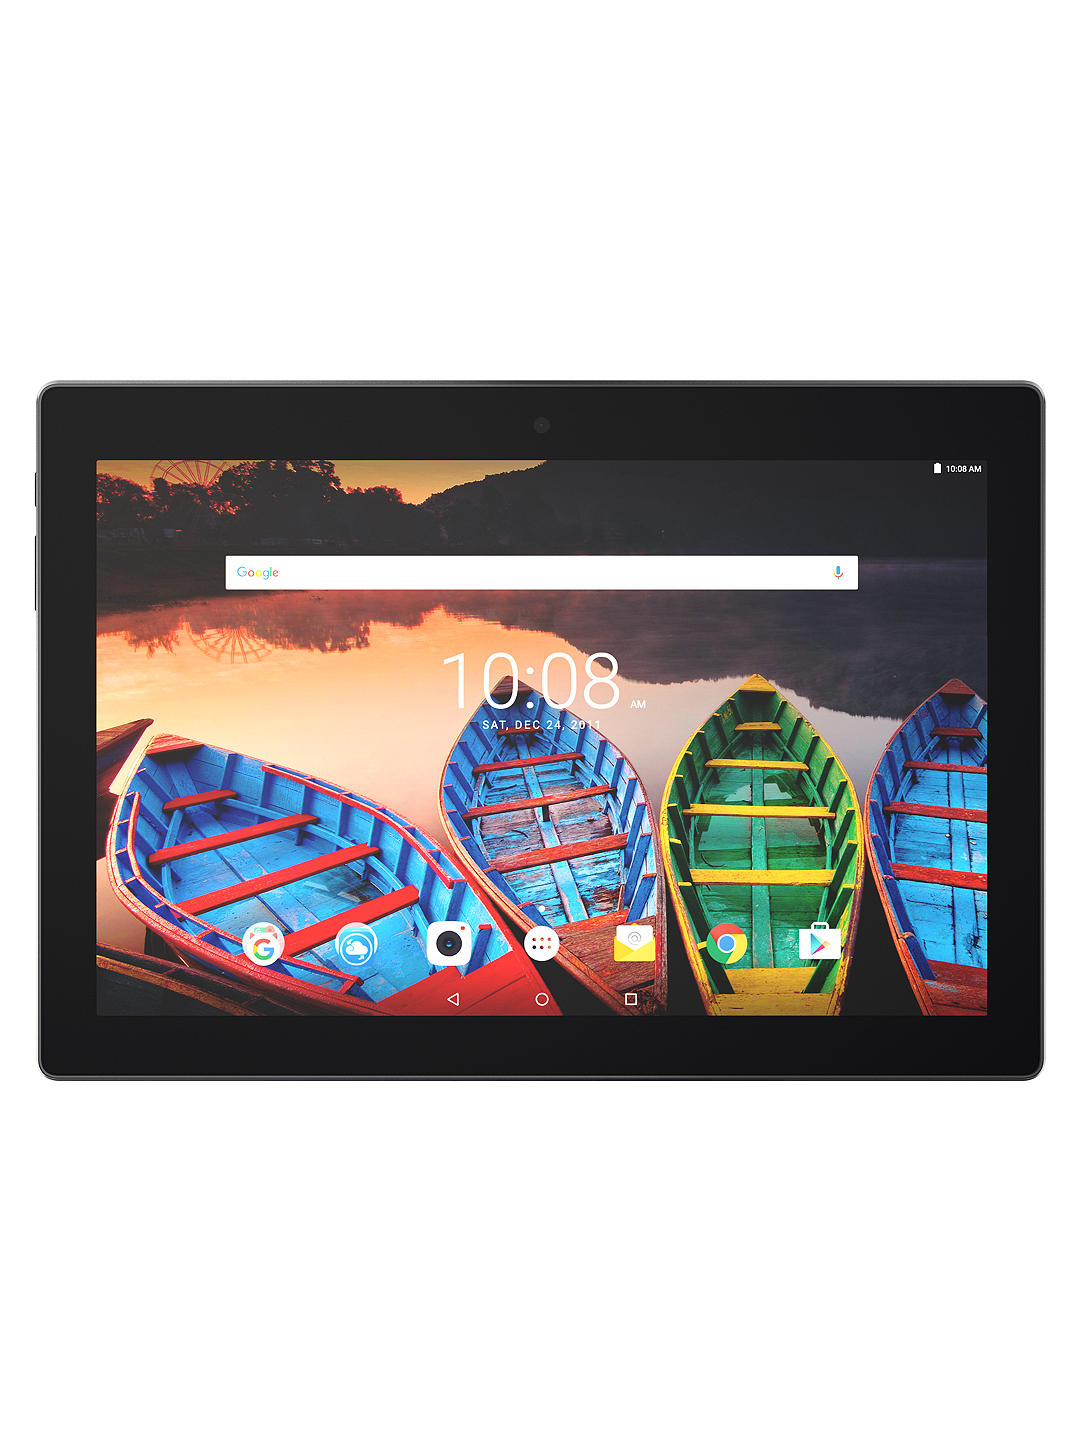 Lenovo Tab 3 Plus FHD 10 inch, 16GB Tablet, Black (refurbished)